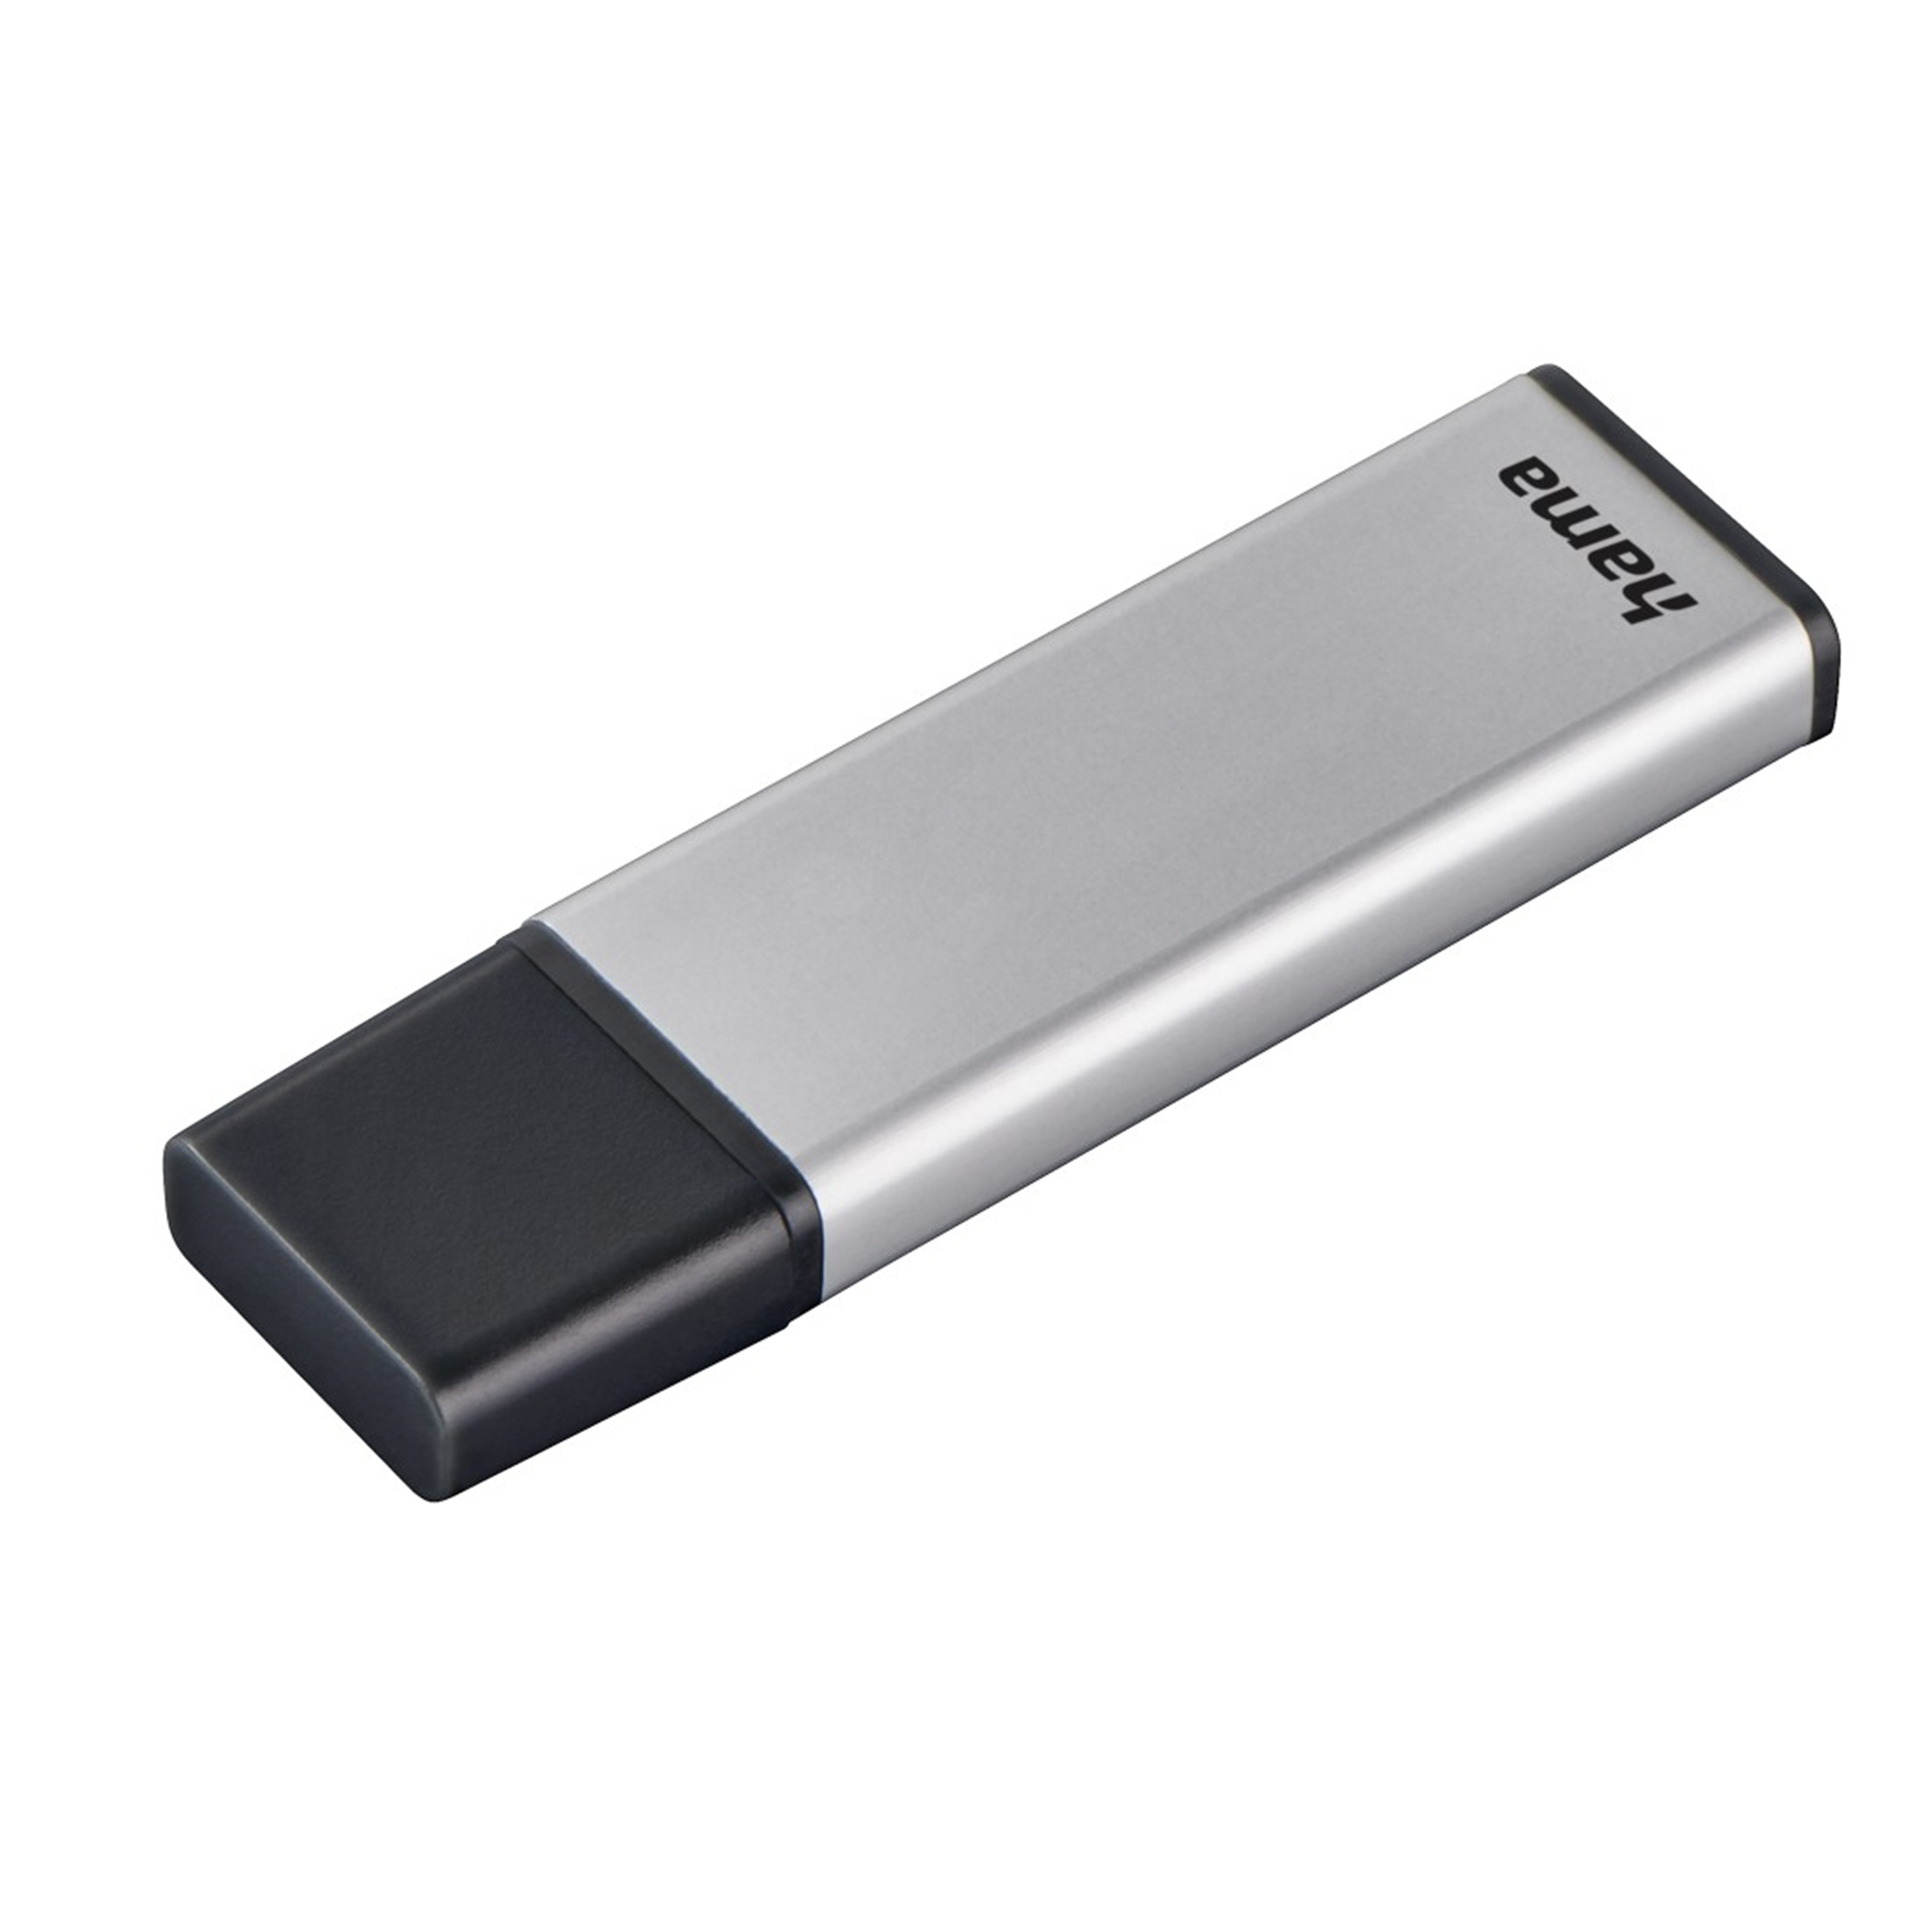 HAMA 32 32 Classic (Silber, GB USB-Stick GB)